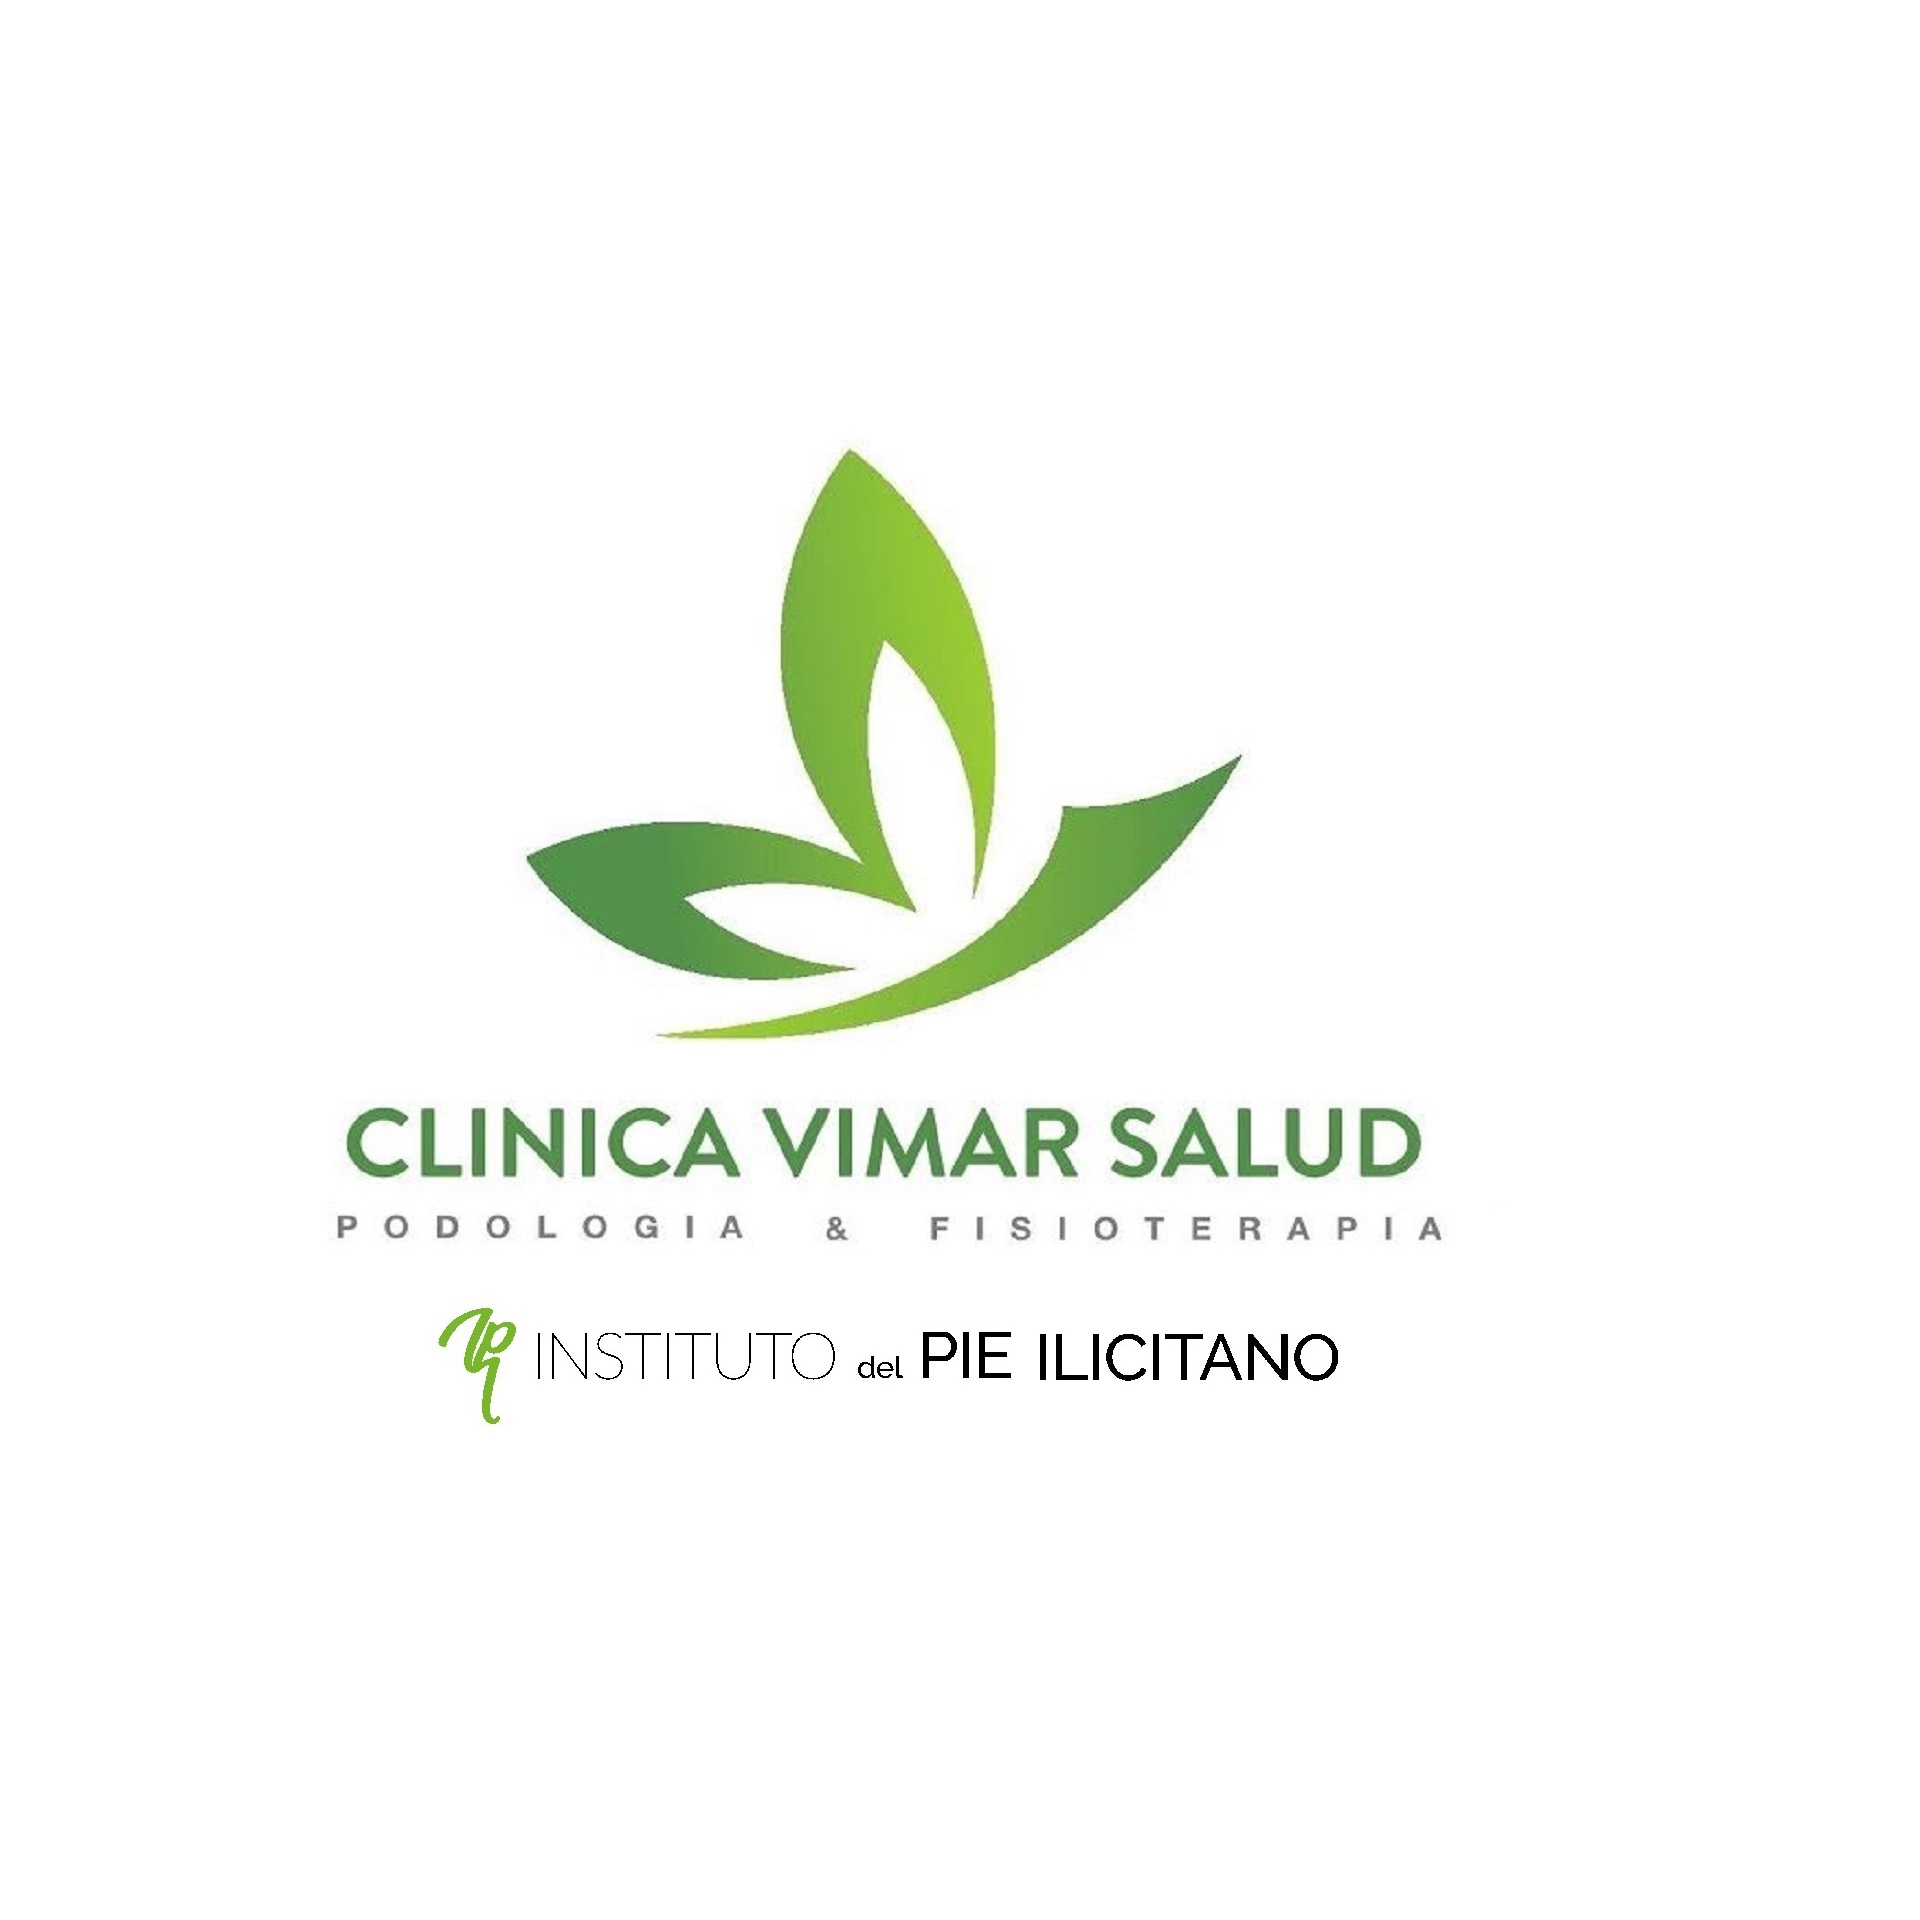 Clinica Vimar Salud ( Instituto del piee Ilicitano y Podología avanzada) Logo